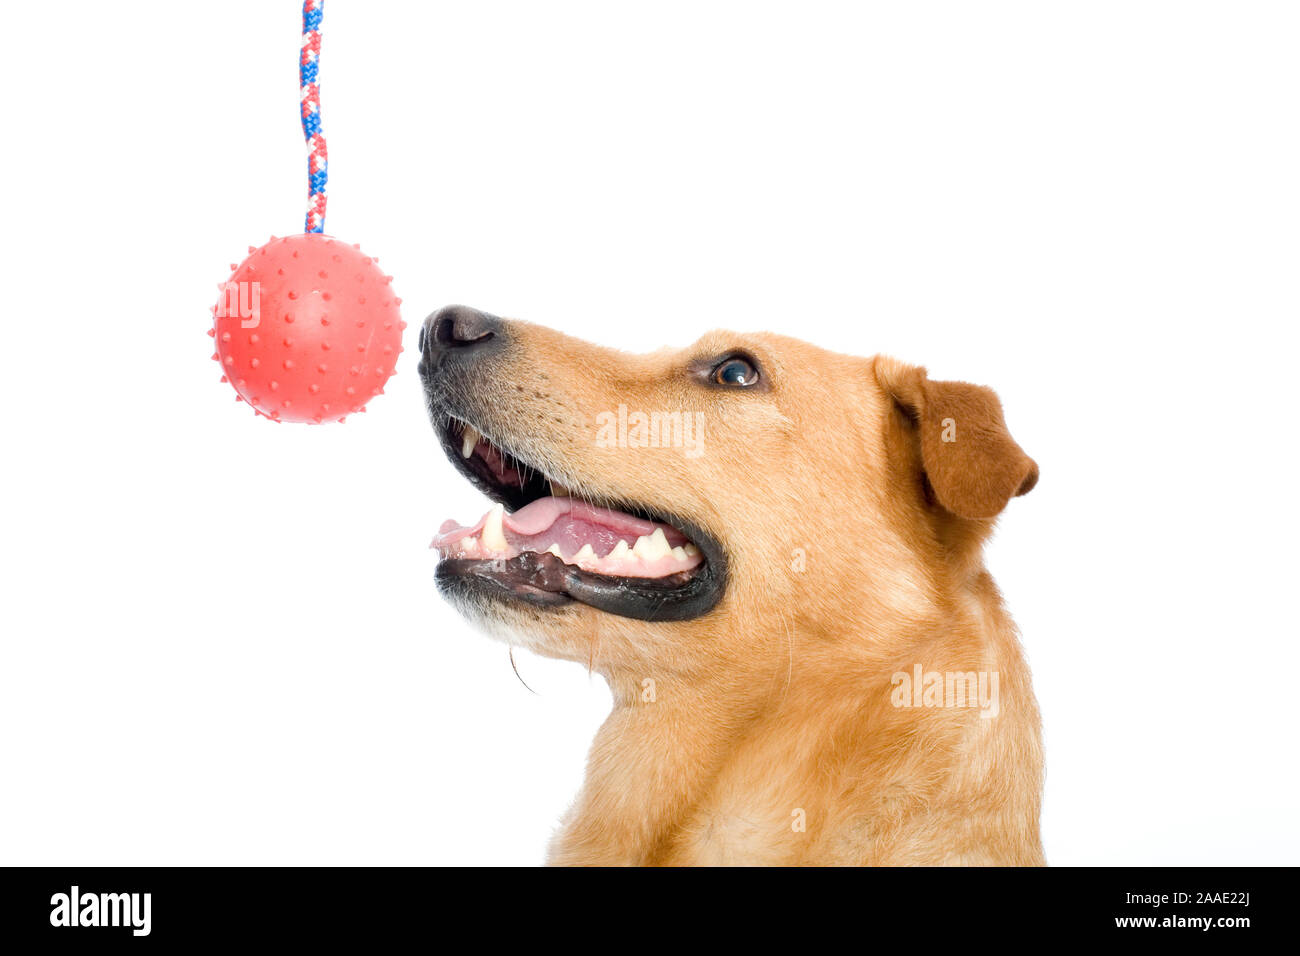 Hund (Retriever-Schnauzer-Mix) mit Spielzeug Foto Stock